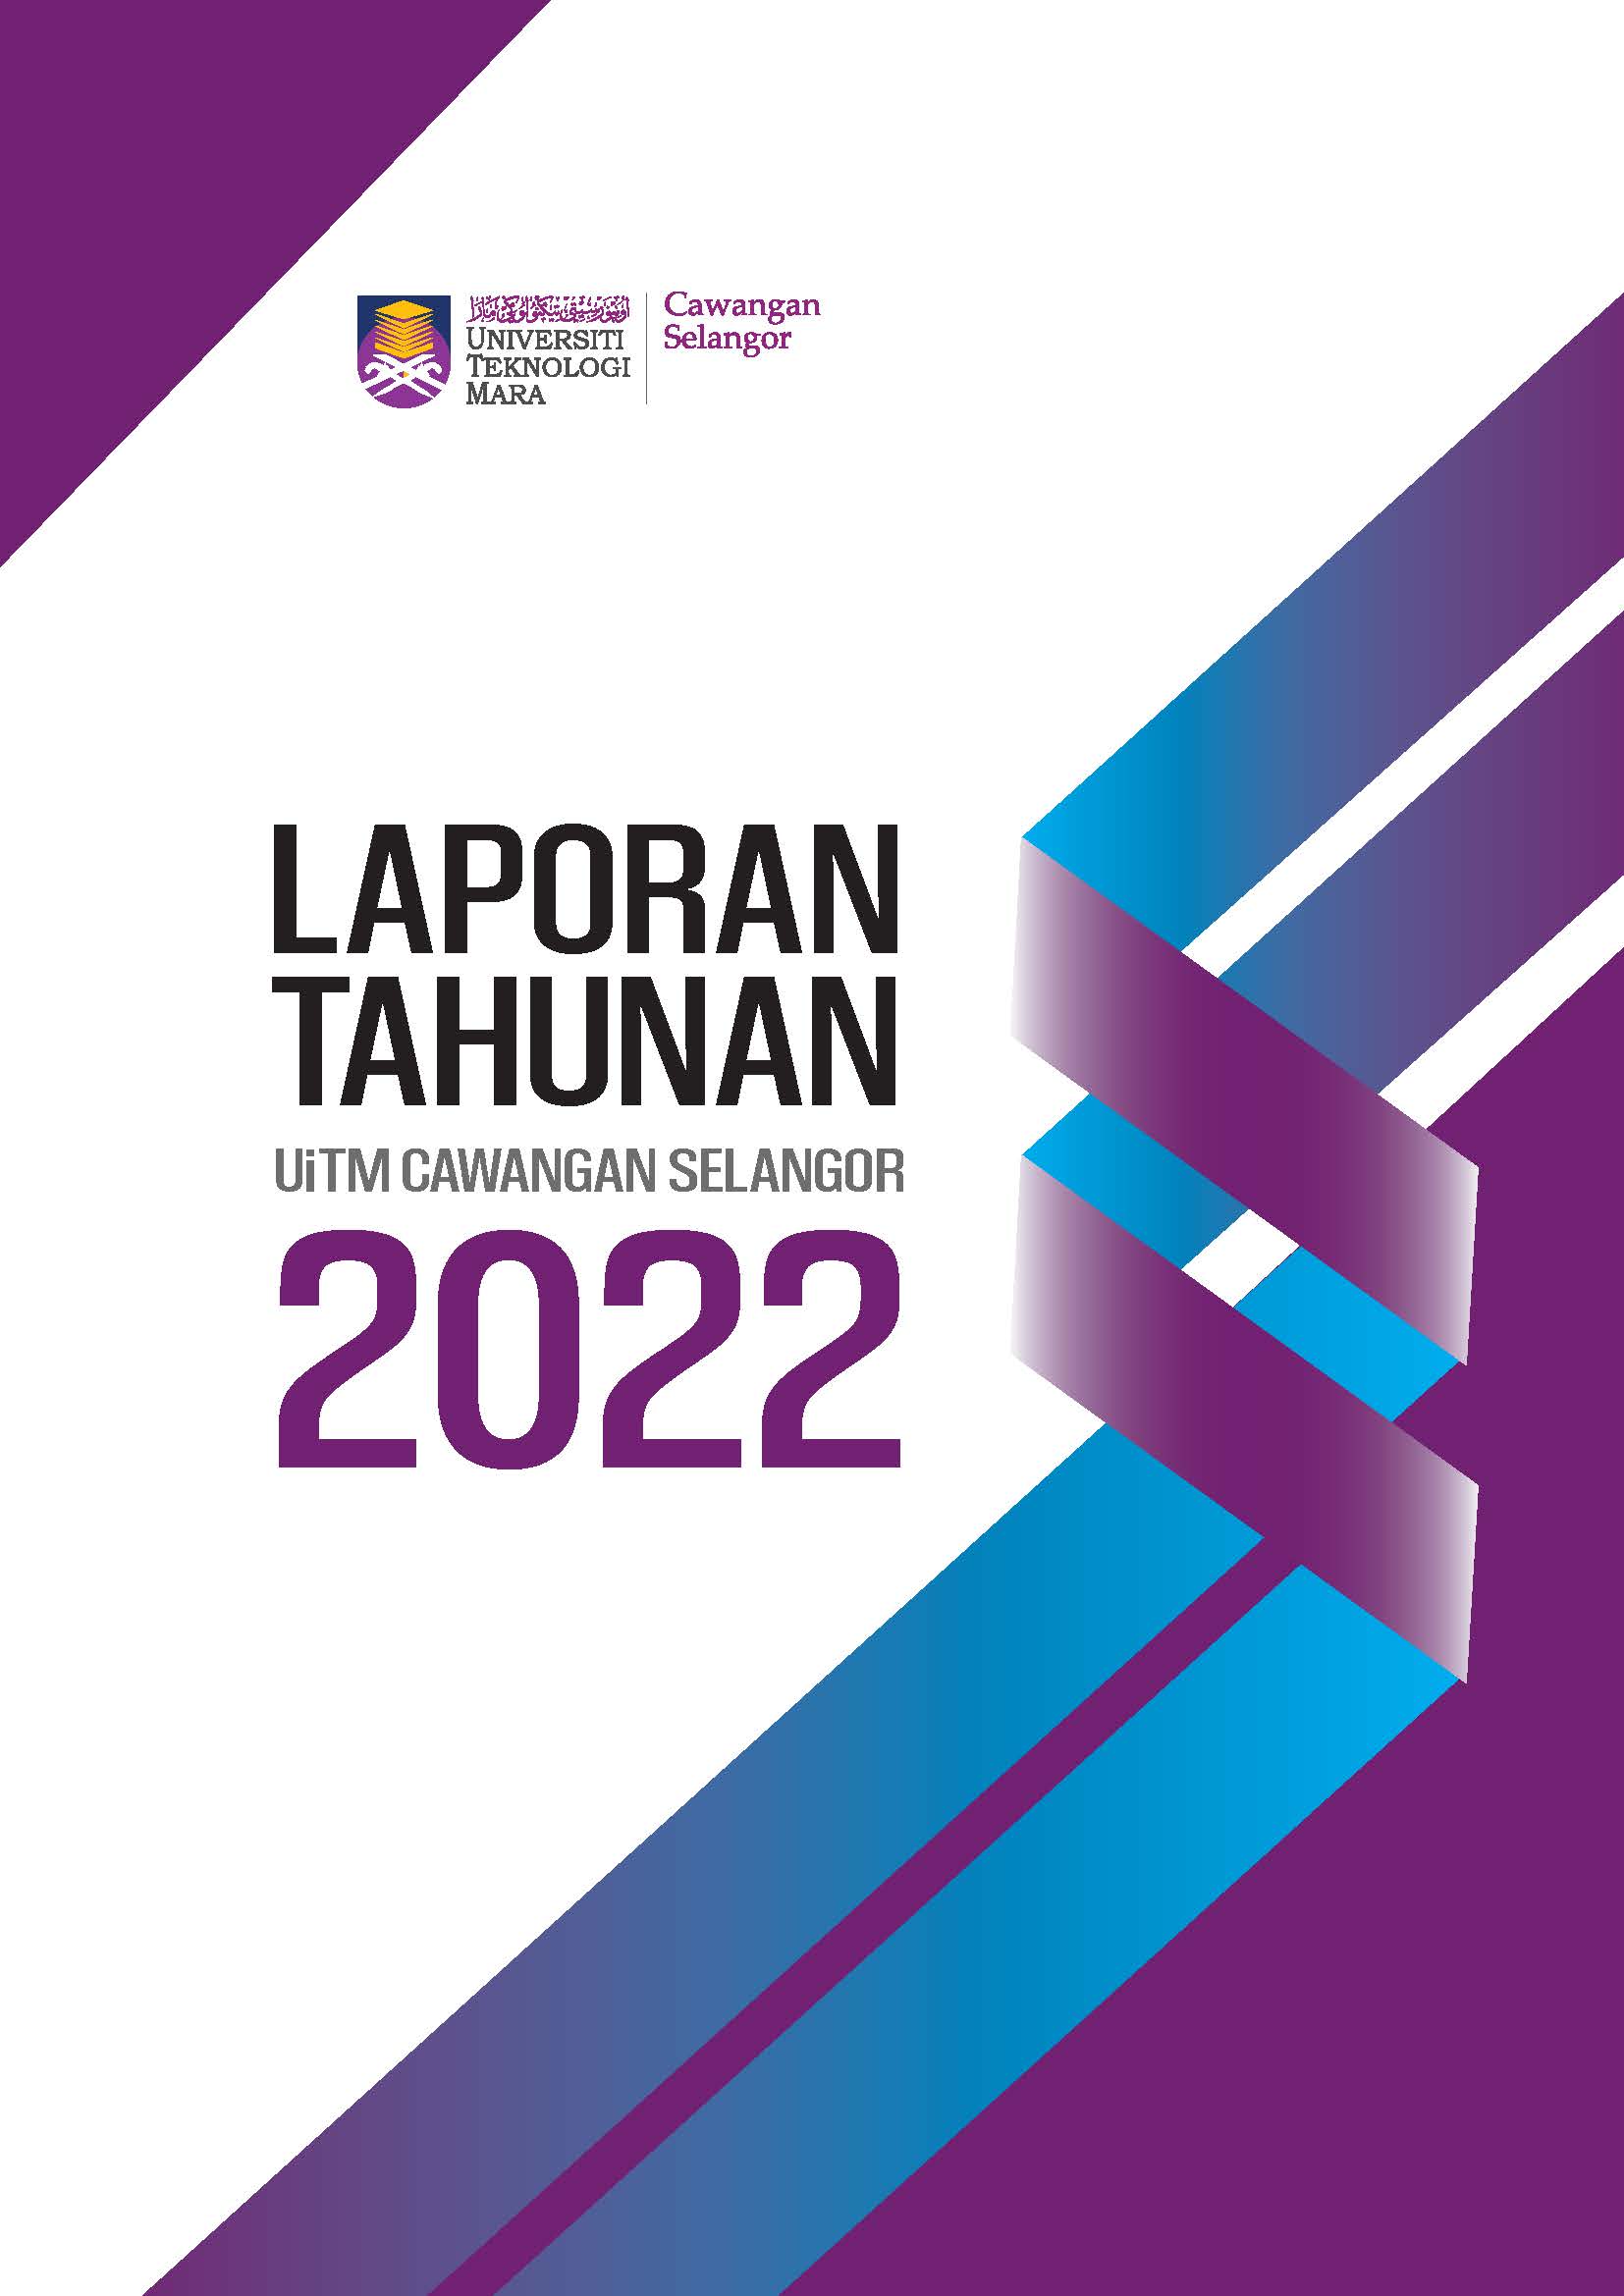 Laporan Tahunan UiTM Cawangan Selangor 2022